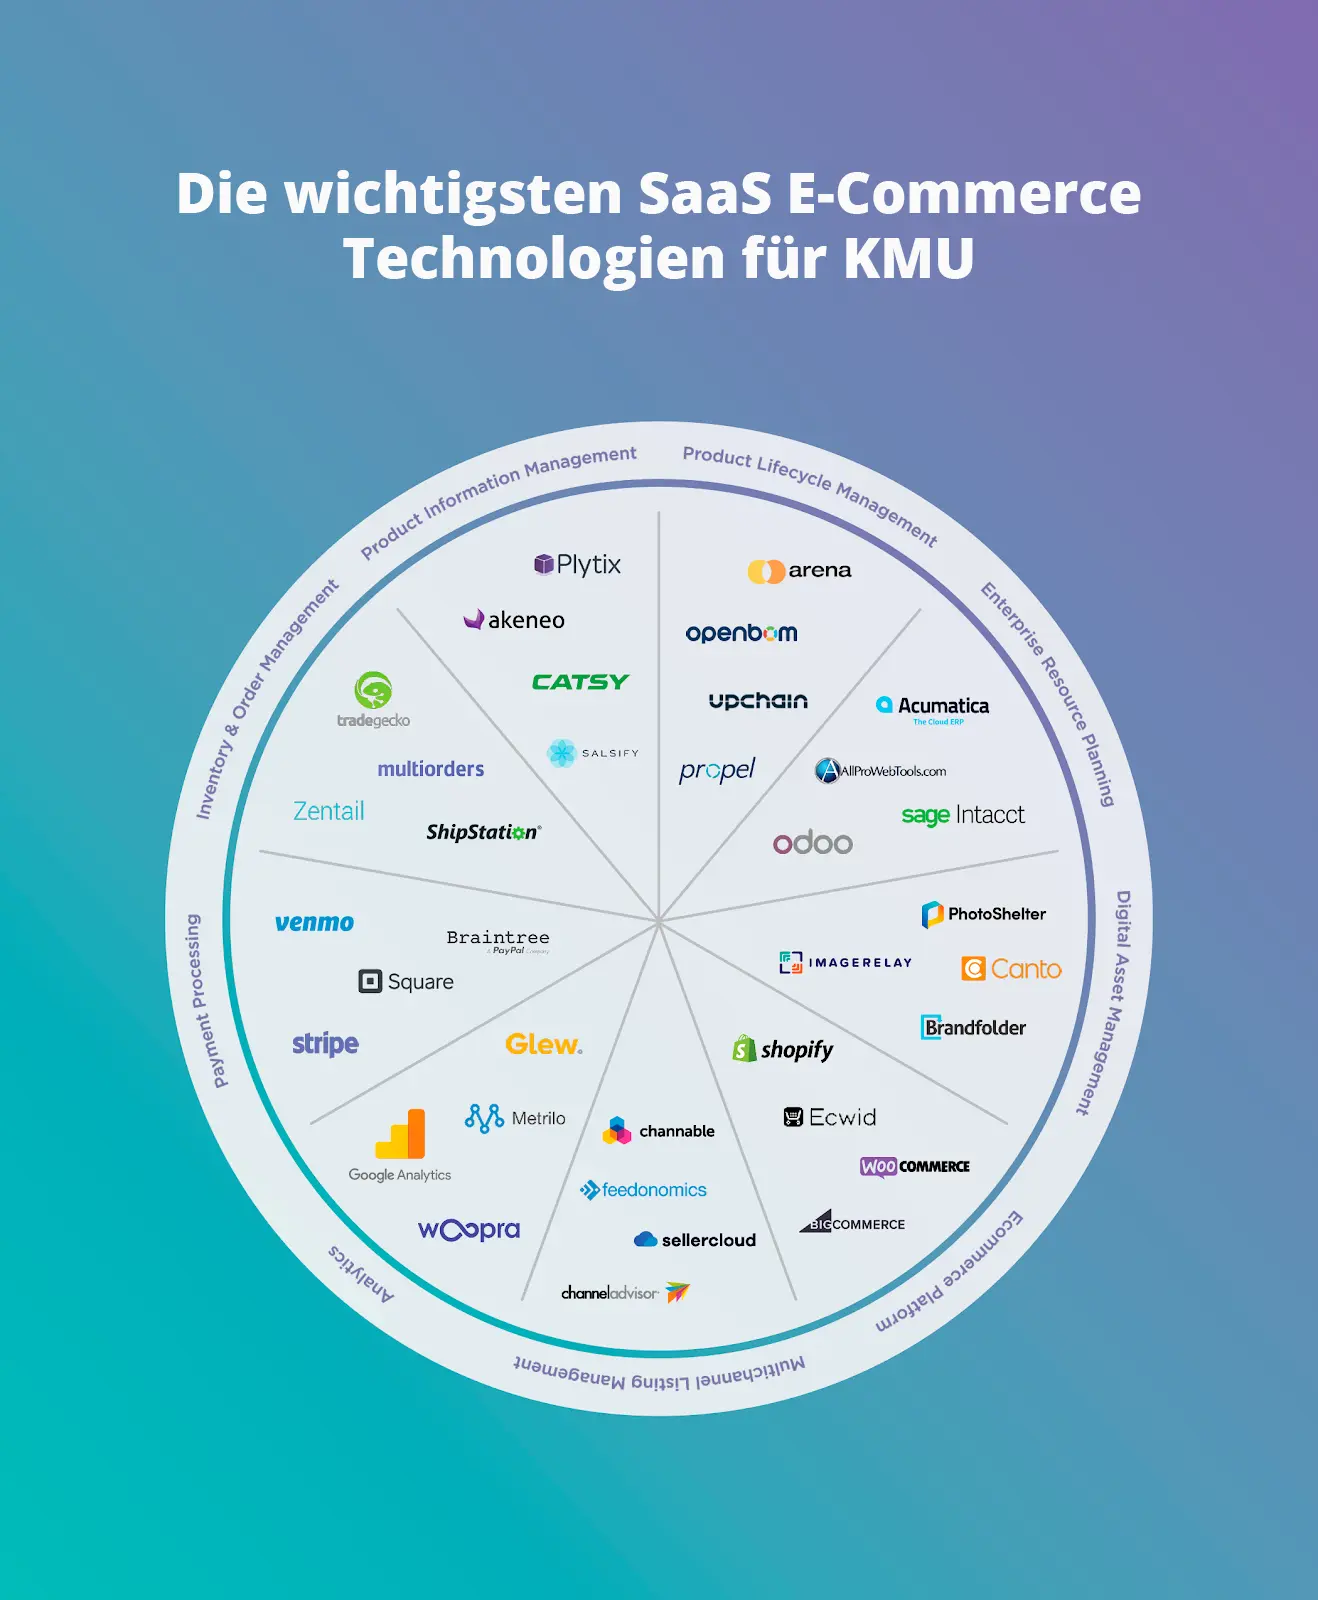 Abbildung die wichtigsten Saas E-Commerce Technologien für KMU